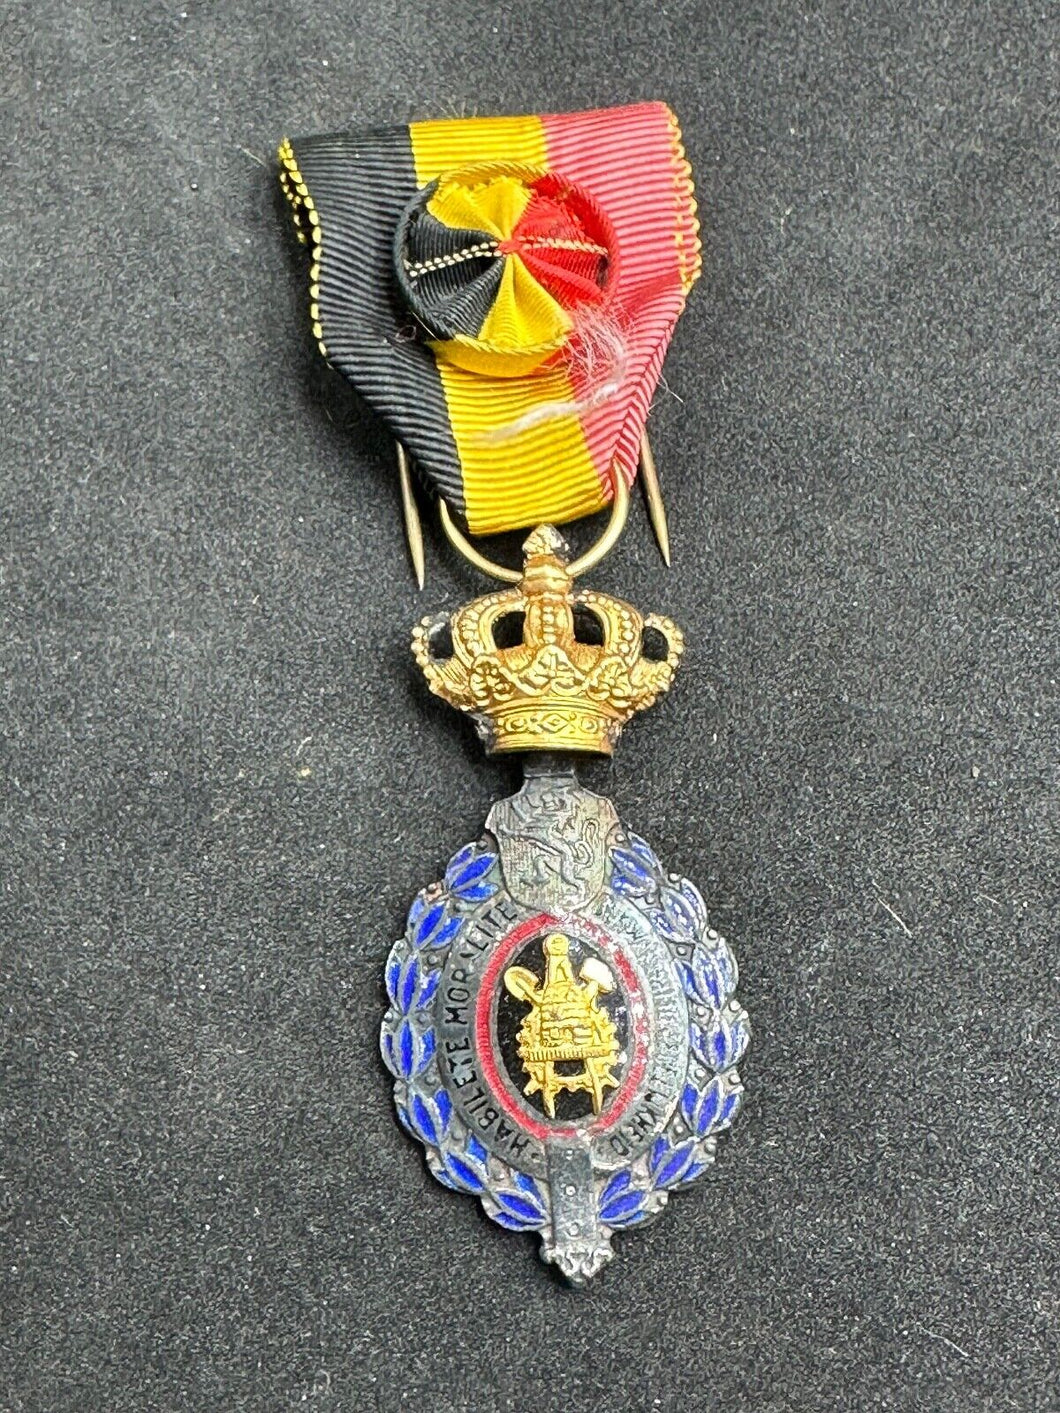 Original WW2 era Belgian Labour Medal - Belgium Habilete Moralite Medal